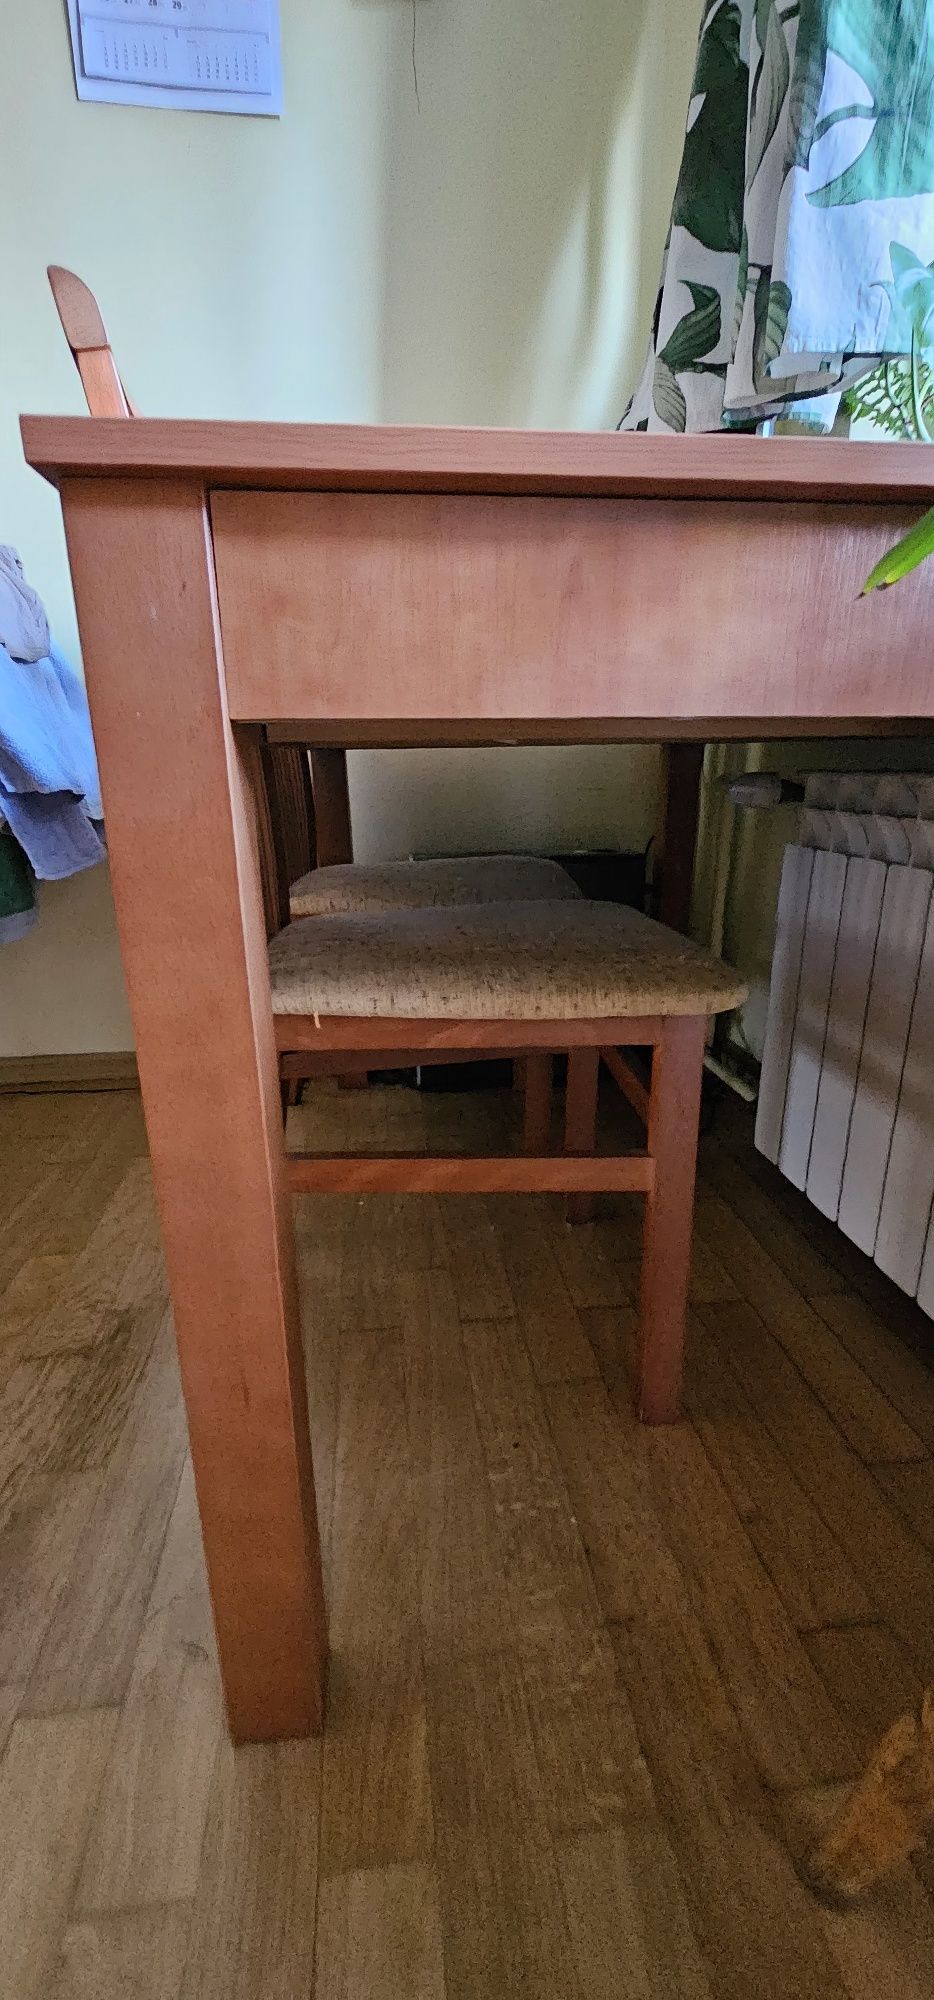 Stół uzywany drewniany z 4 stolkami za free